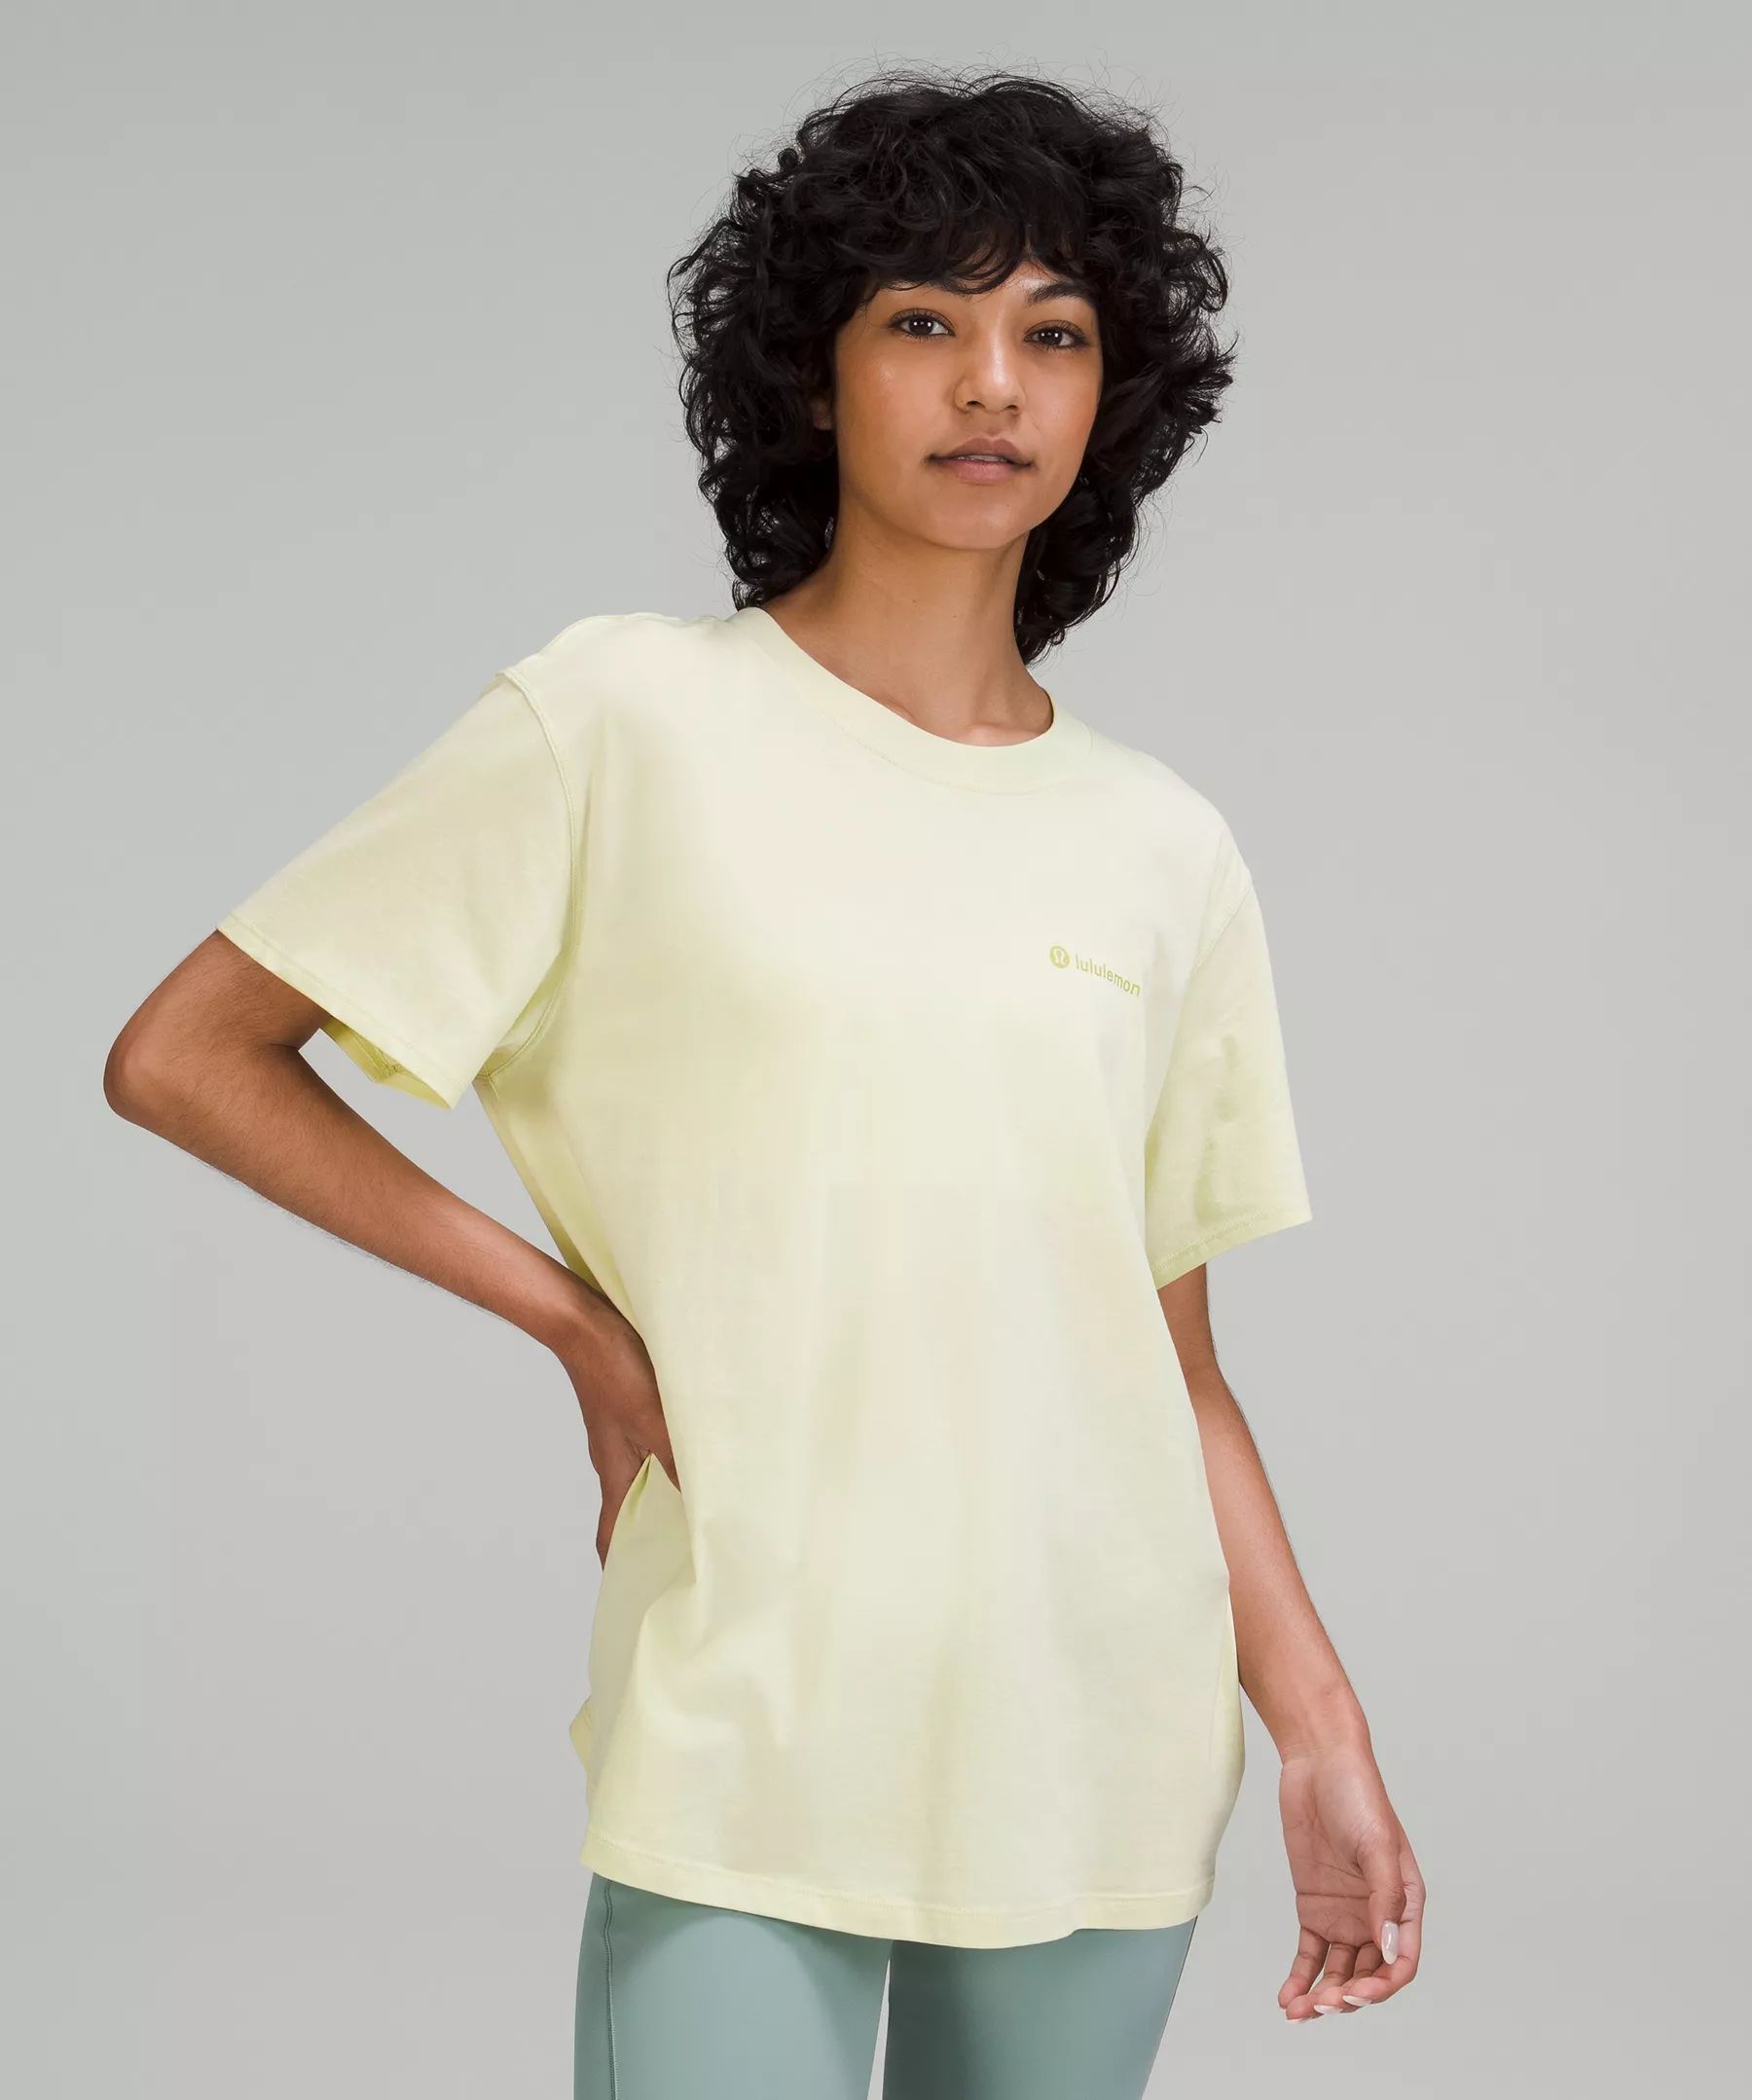 All Yours Graphic Short Sleeve T-Shirt lululemon | Lululemon (US)